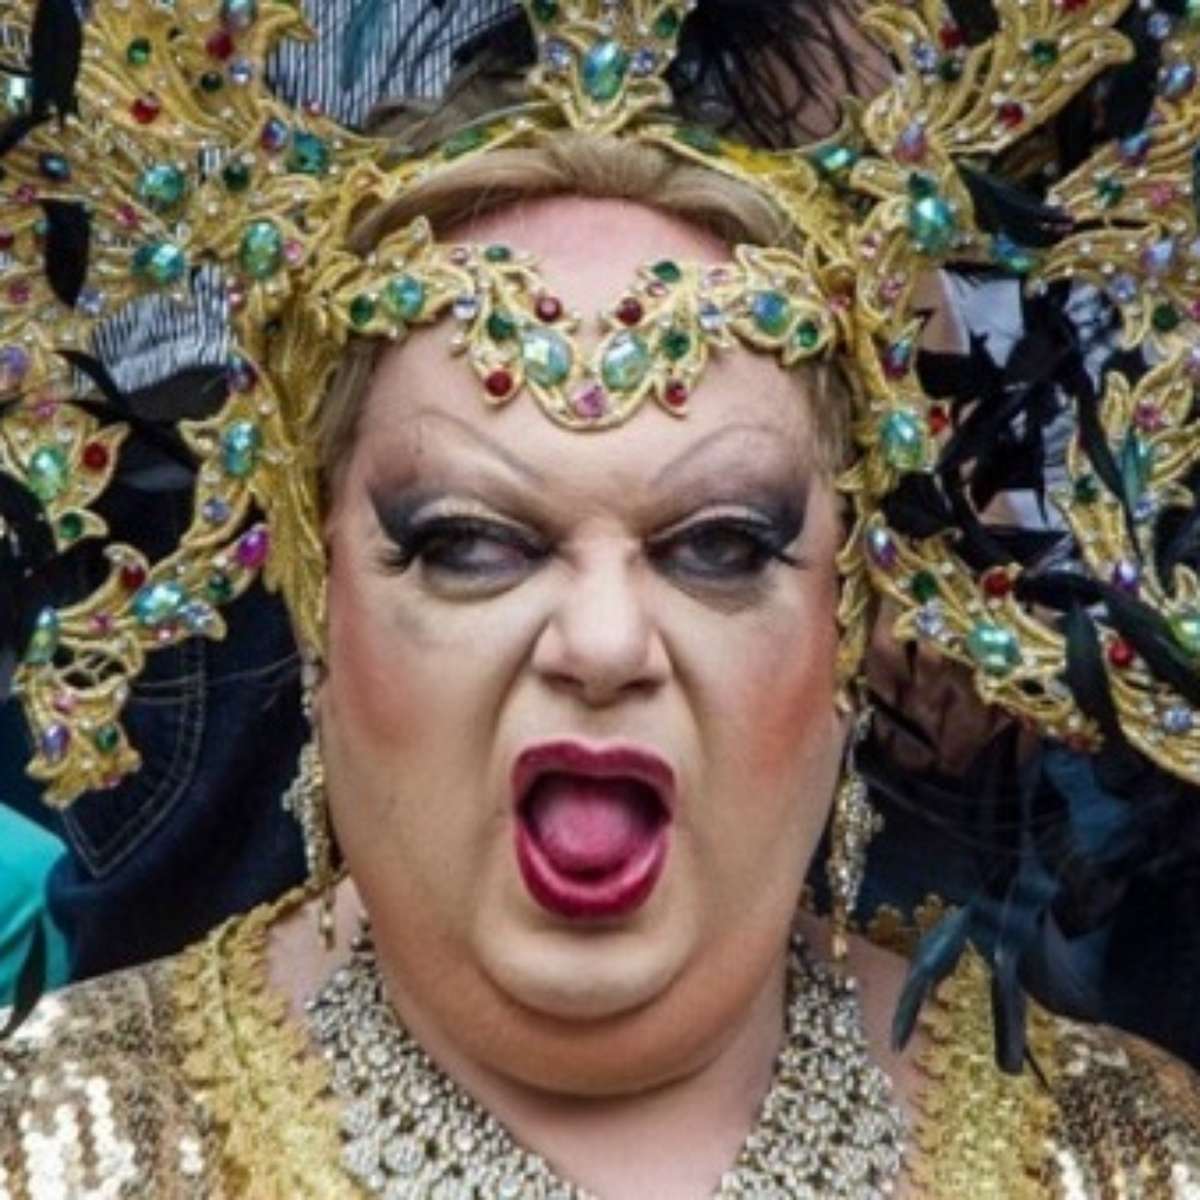 De vanguardista a 'cancelada': quem foi a lendária drag queen Kaká di Polly  - 28/01/2023 - UOL TAB